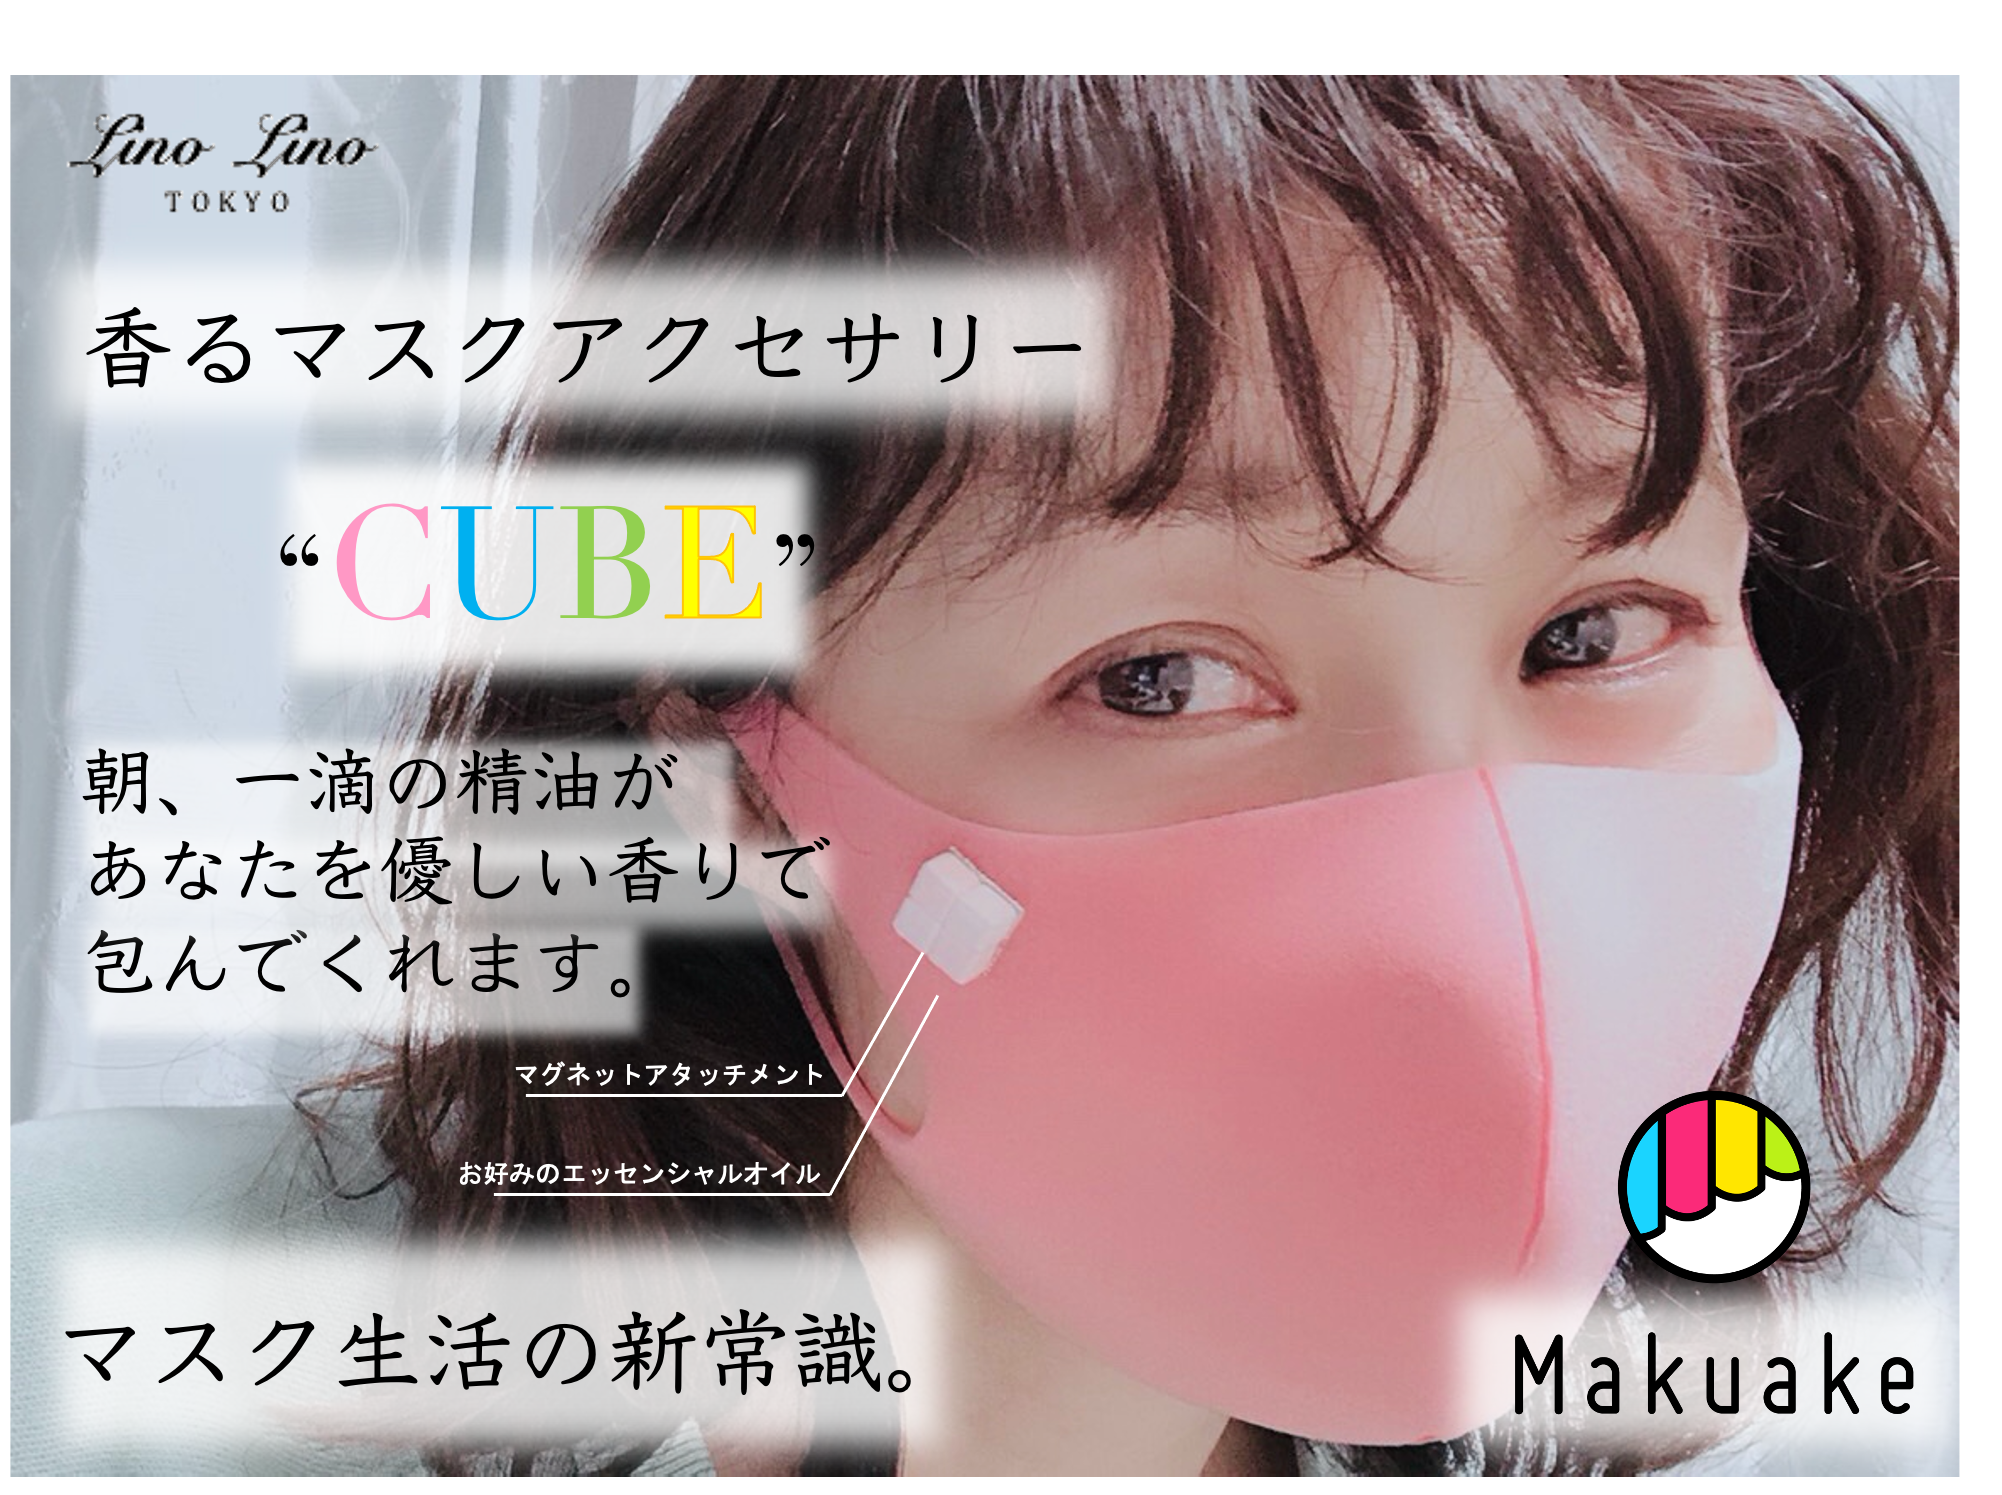 【香るマスクアクセサリーCUBE】応援購入サービス「Makuake」にて初日に目標達成